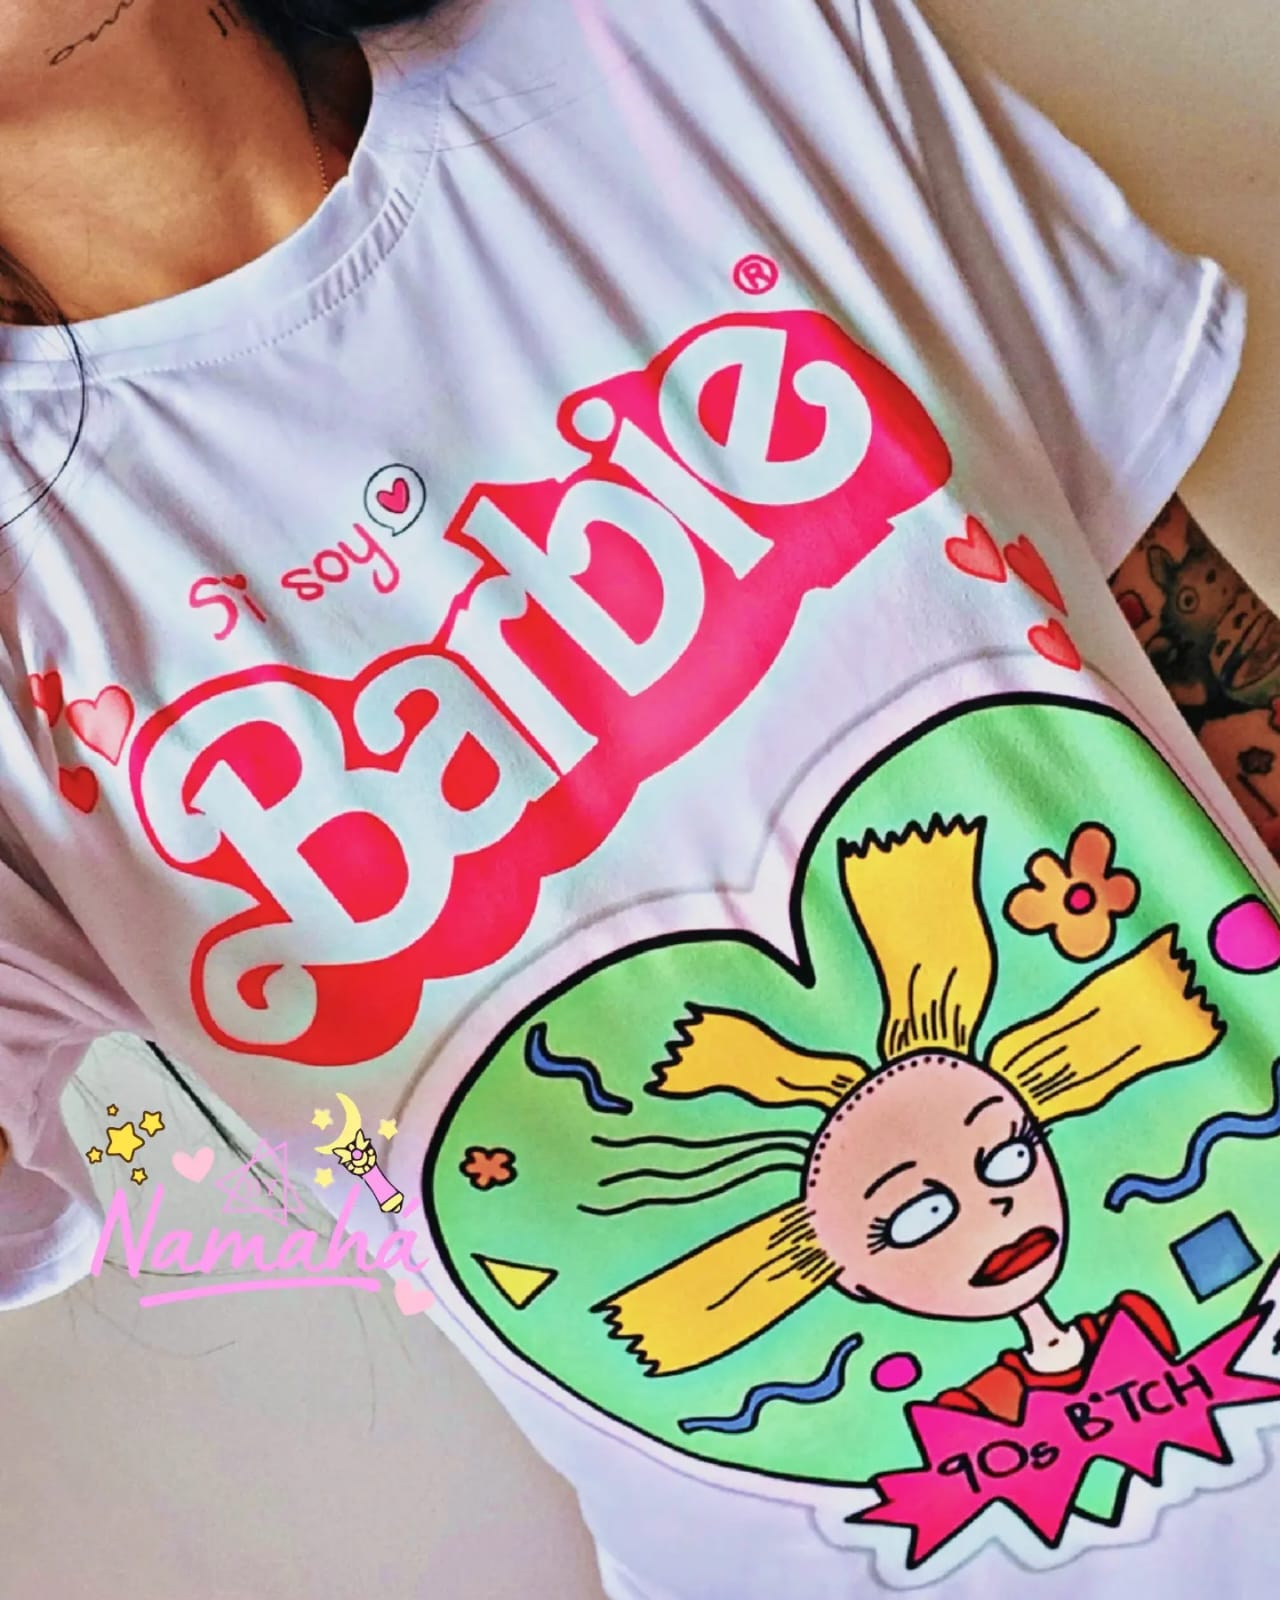 Camiseta estampada de Barbie - Namahá Camisetas